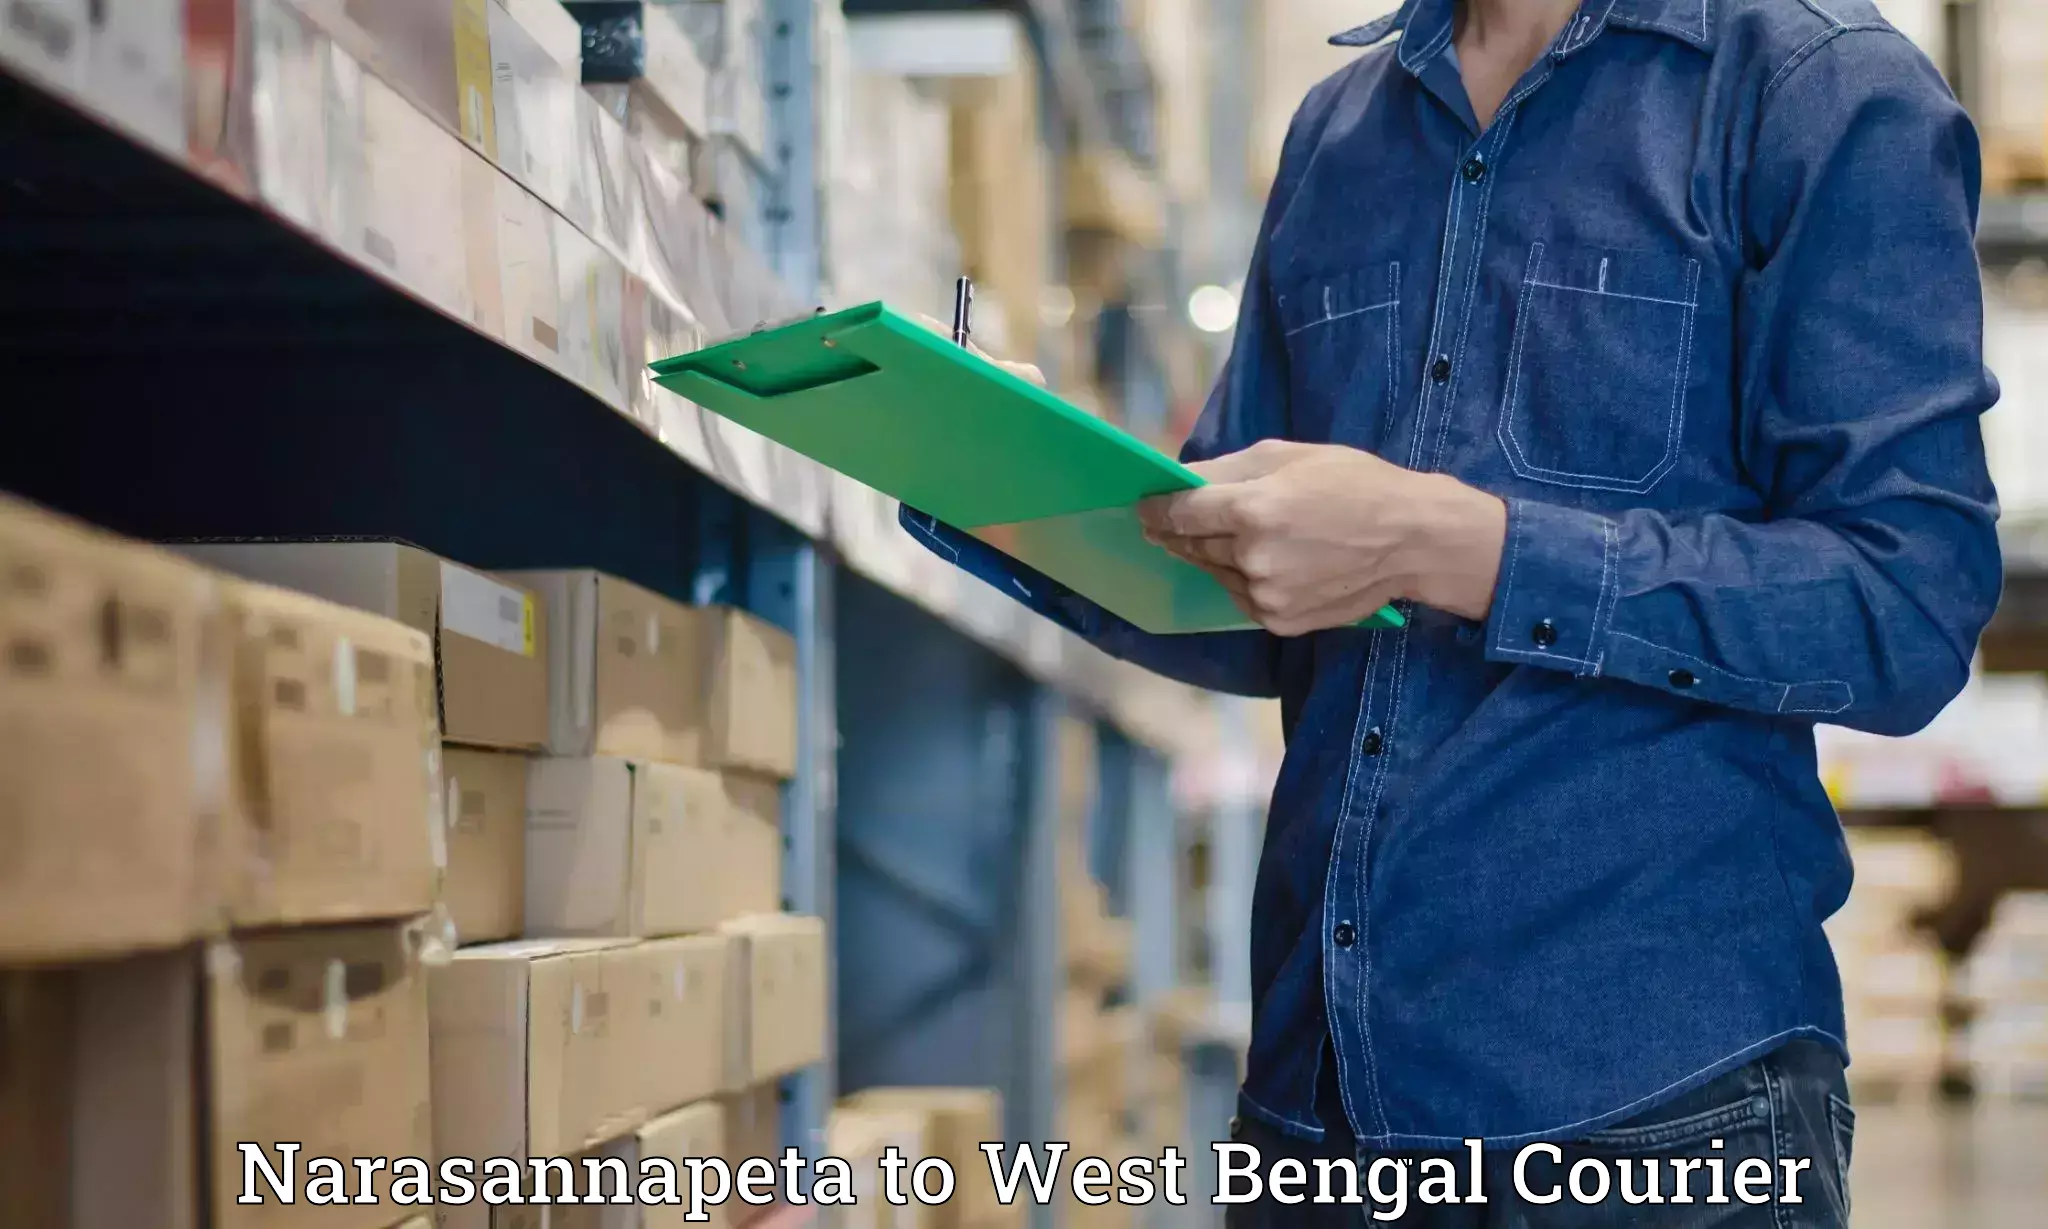 Express courier capabilities Narasannapeta to West Bengal